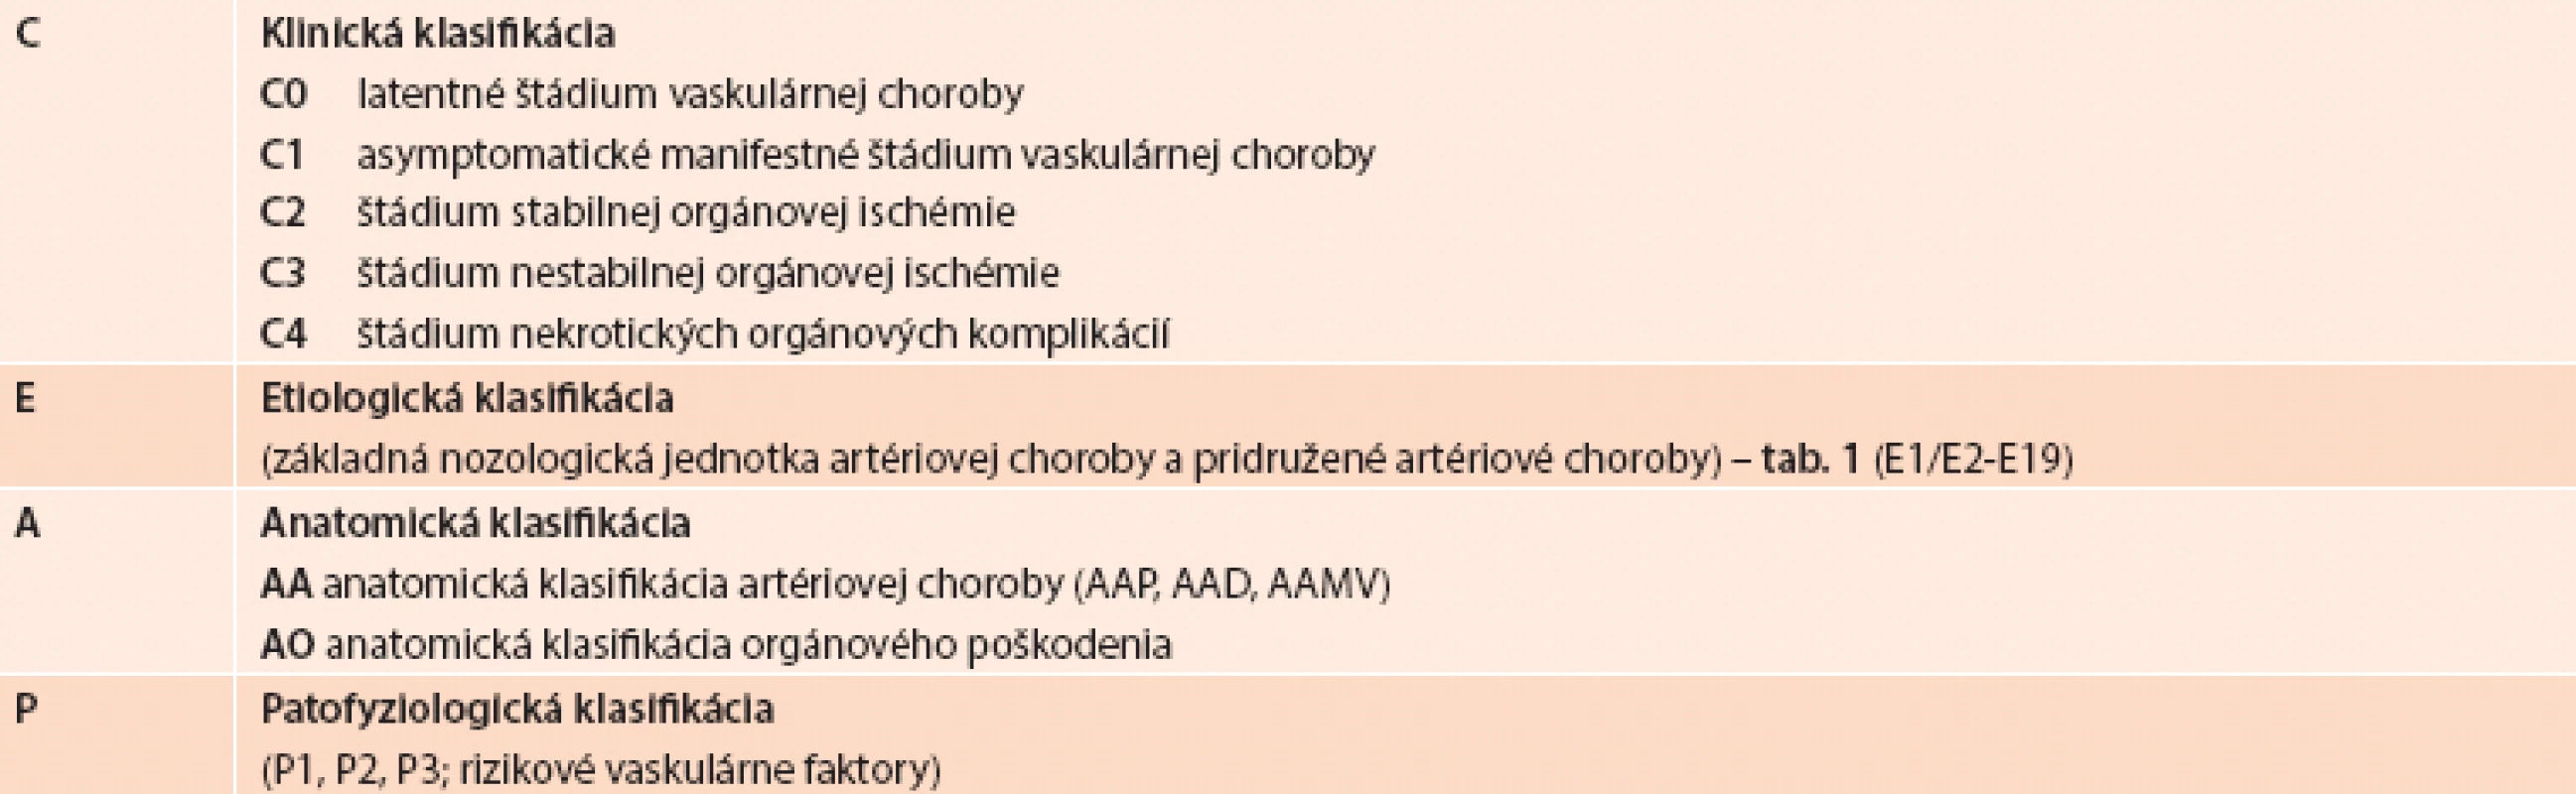 Klinicko-etiologicko-anatomicko-patofyziologická (CEAP) klasifikácia orgánovovaskulárnych chorôb,
vrátane multiorgánovomultivaskulárnej artériovej choroby [32,33]